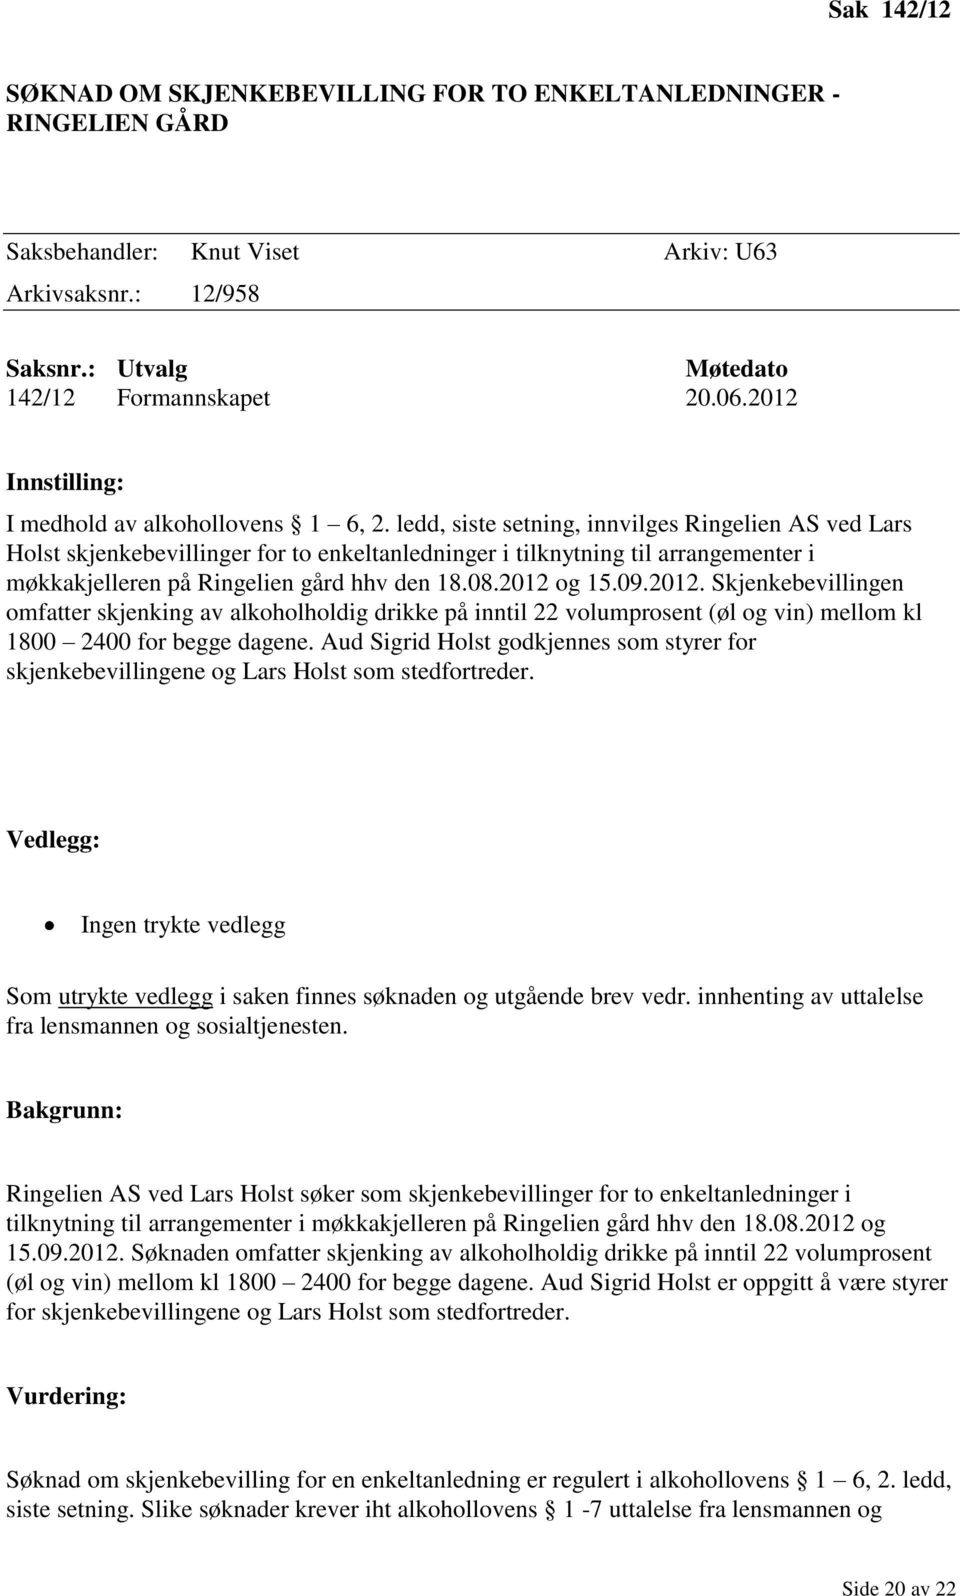 ledd, siste setning, innvilges Ringelien AS ved Lars Holst skjenkebevillinger for to enkeltanledninger i tilknytning til arrangementer i møkkakjelleren på Ringelien gård hhv den 18.08.2012 og 15.09.